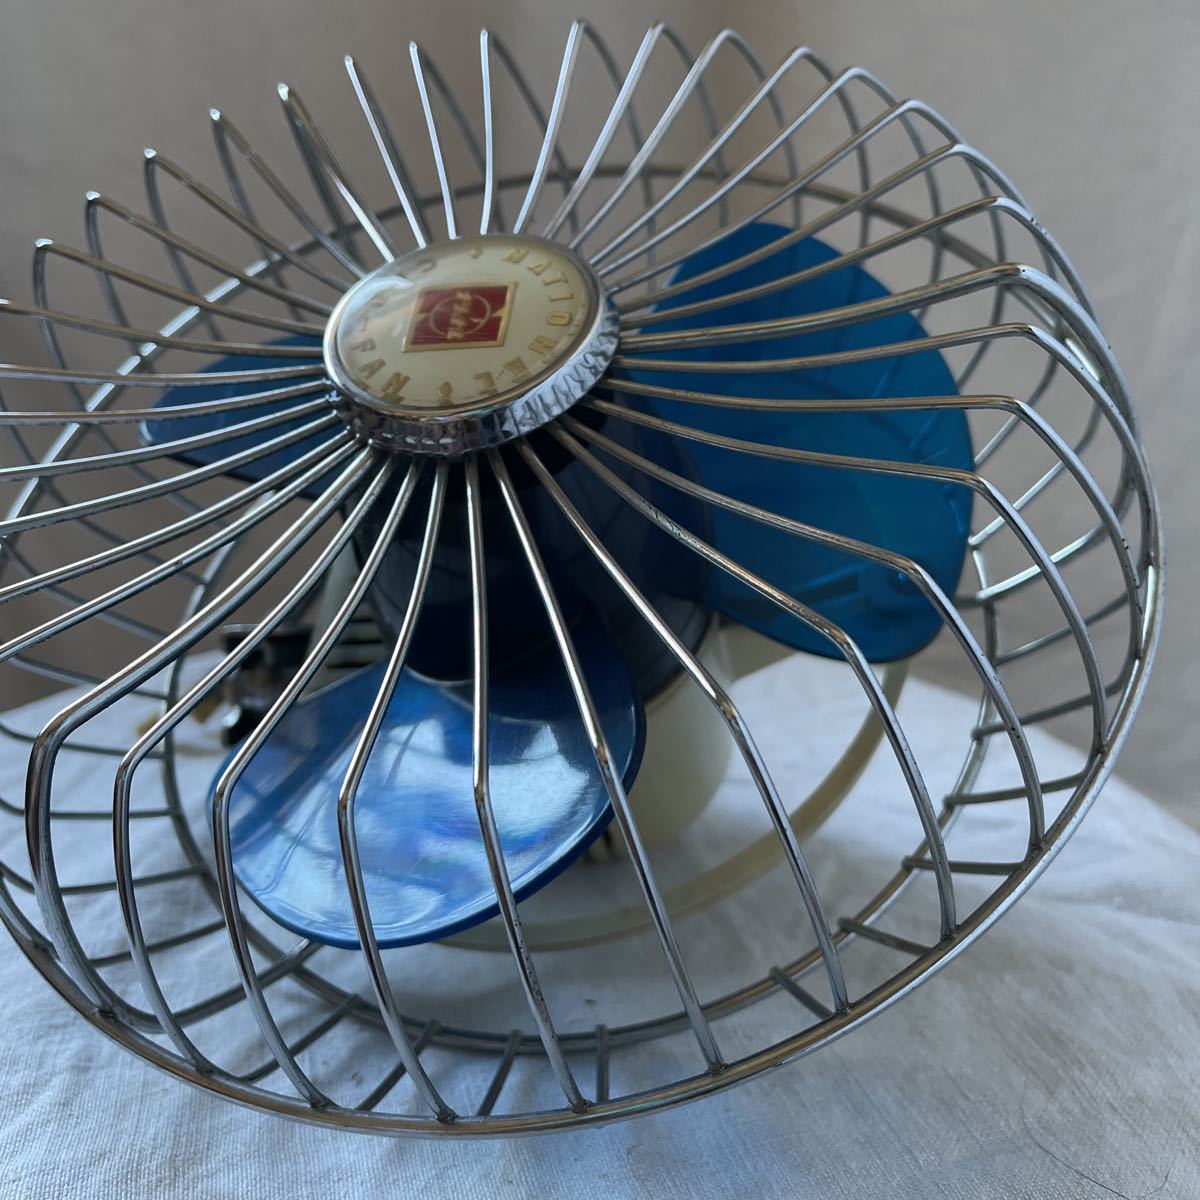  Showa Retro that time thing antique electric fan National car fan car electric fan 